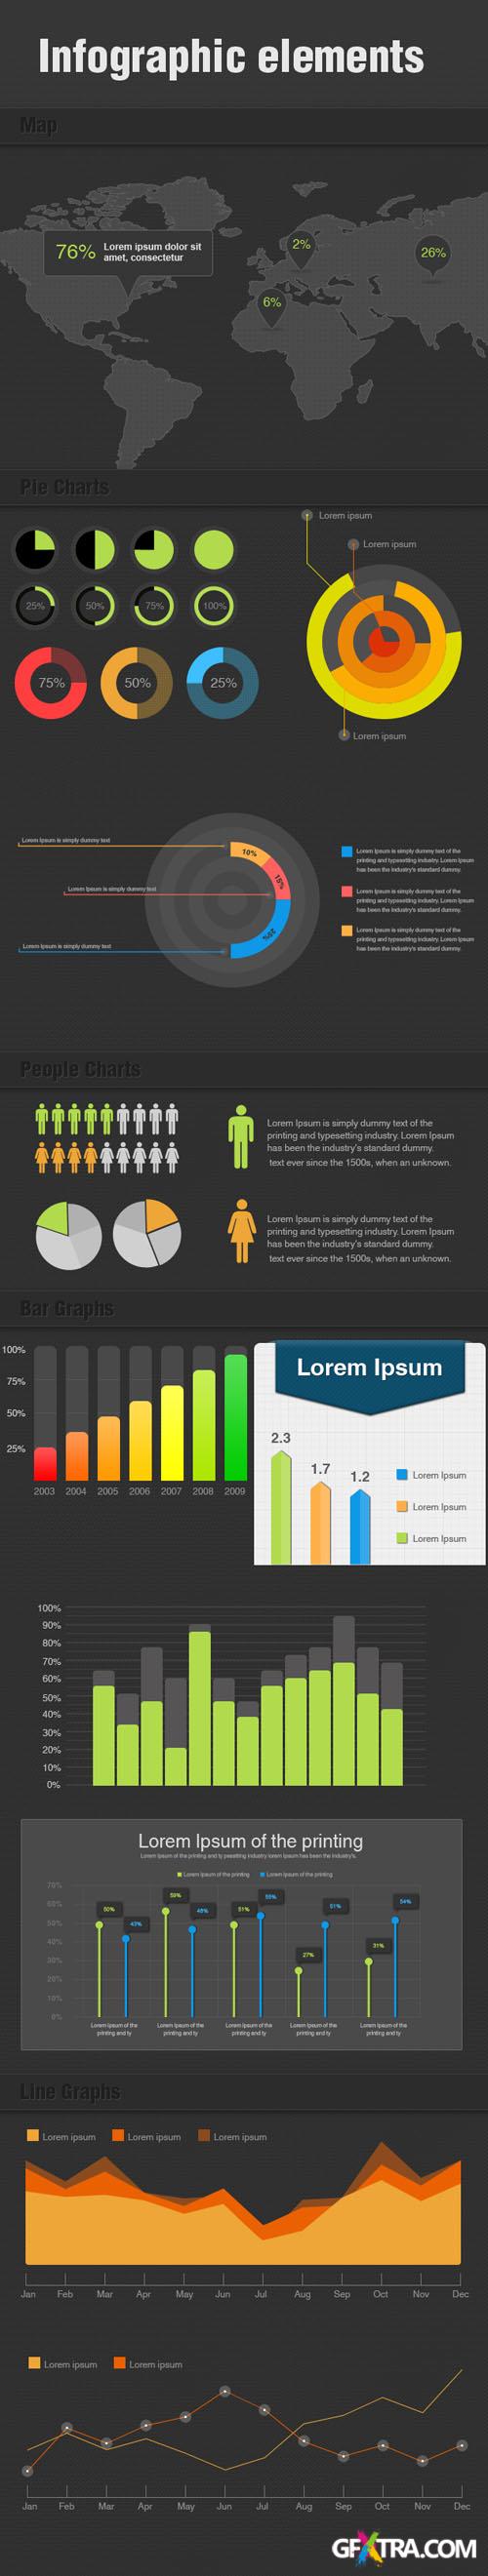 Designtnt - Infographic Elements PSD